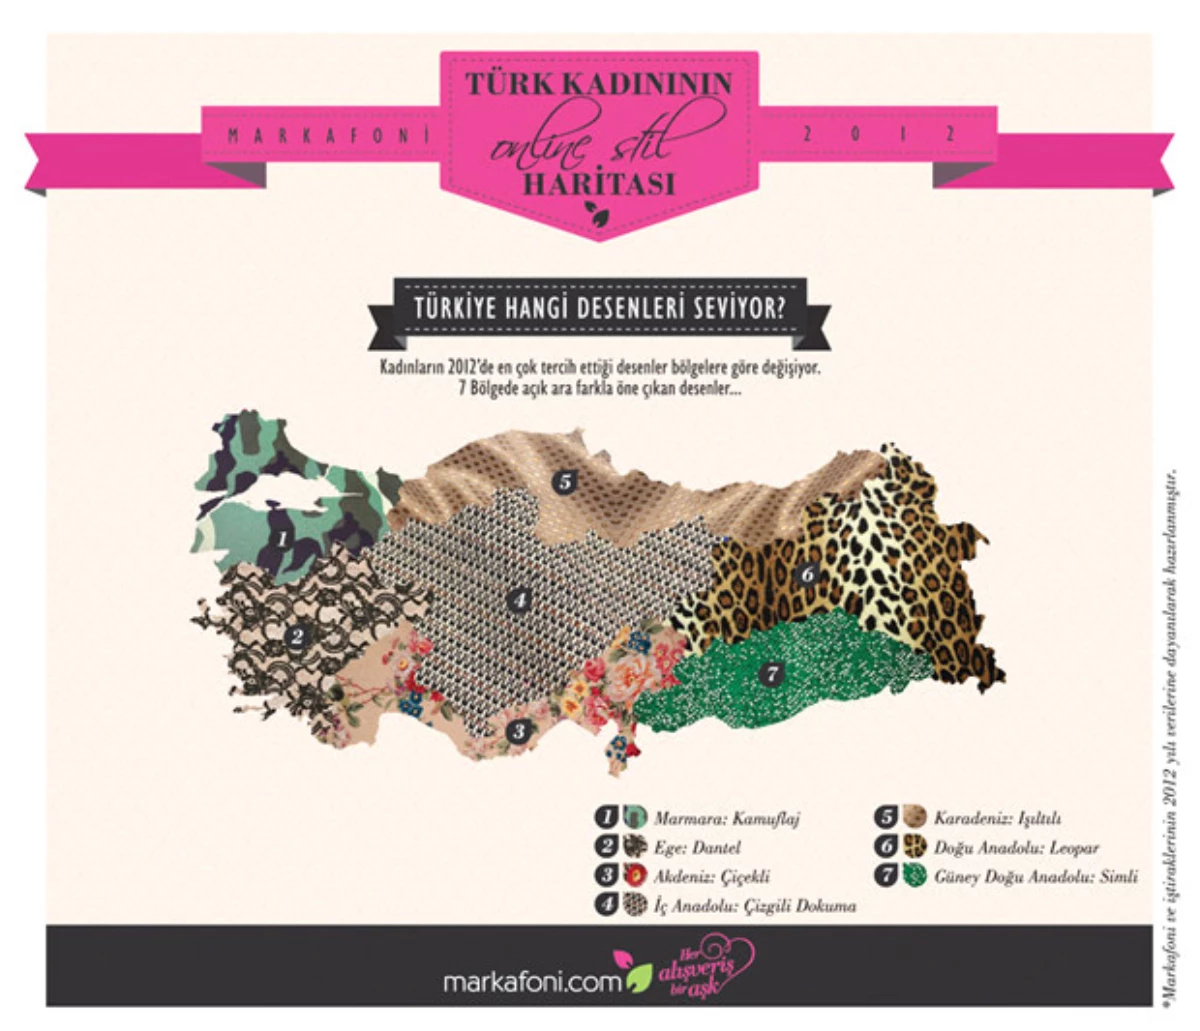 Markafoni Türk Kadınının Online Stil Haritasını Çıkarttı